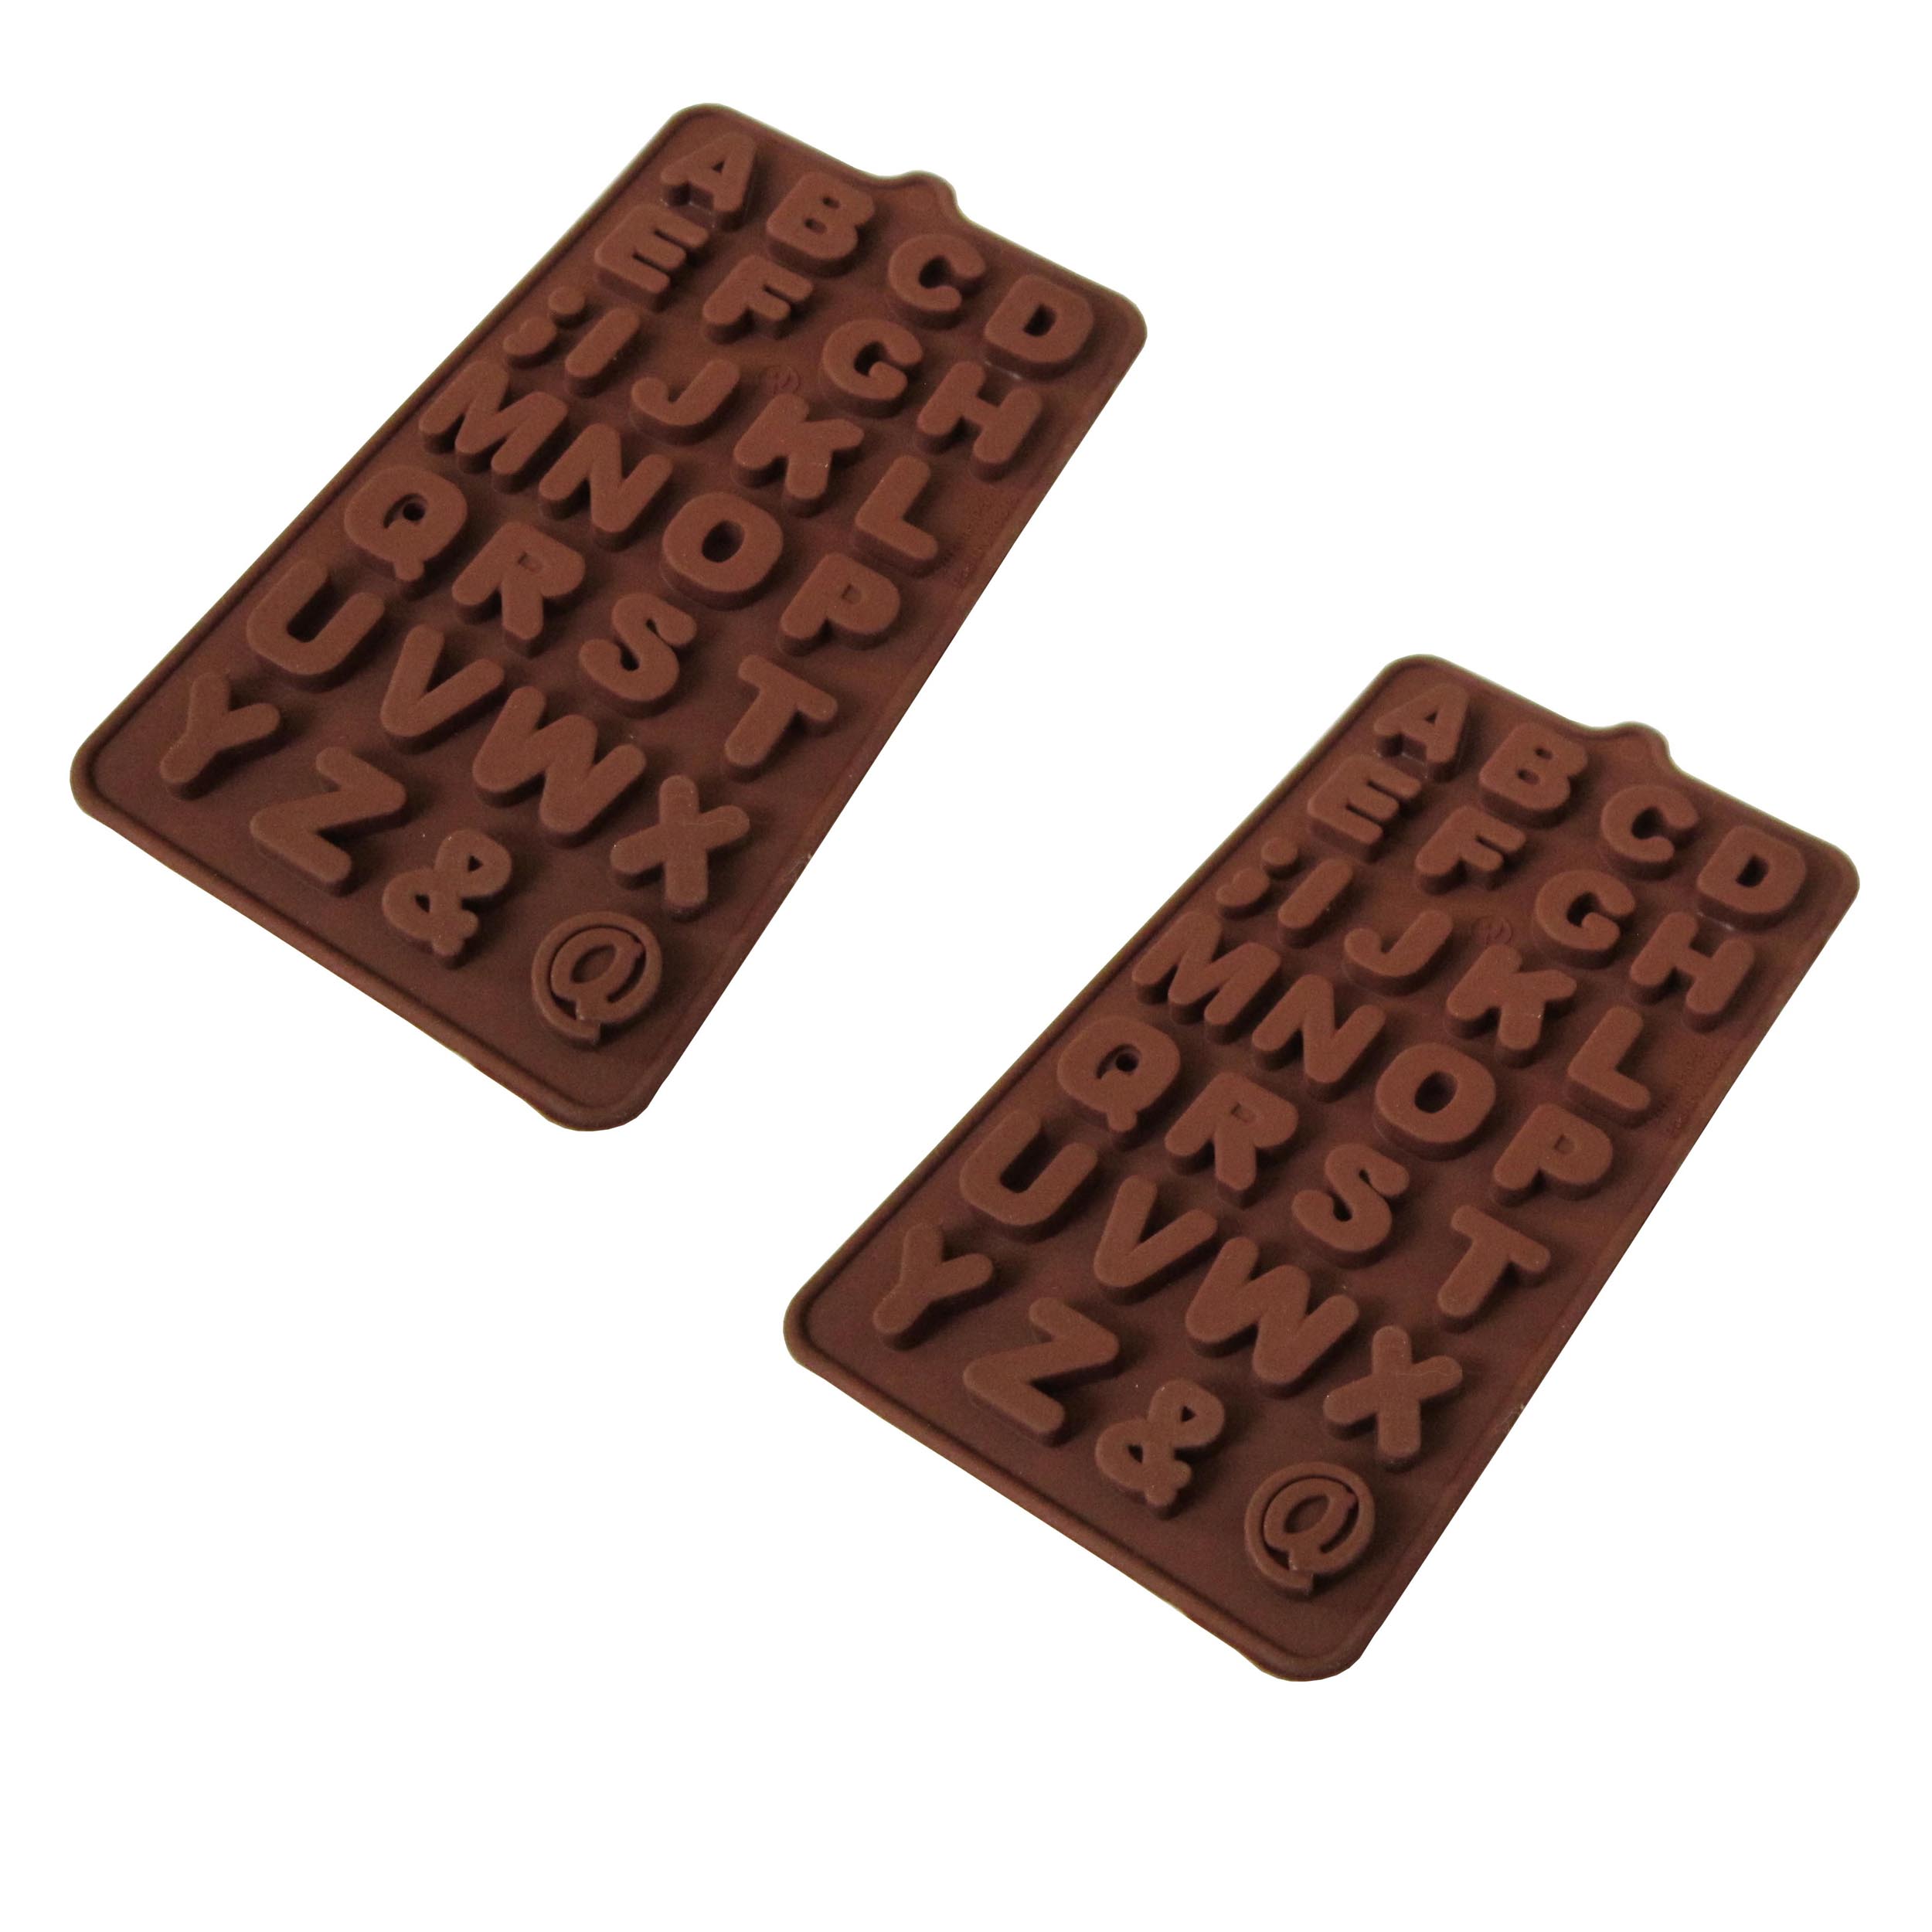 قالب شکلات مدل حروف انگليسي فانتزي بسته 2 عددي